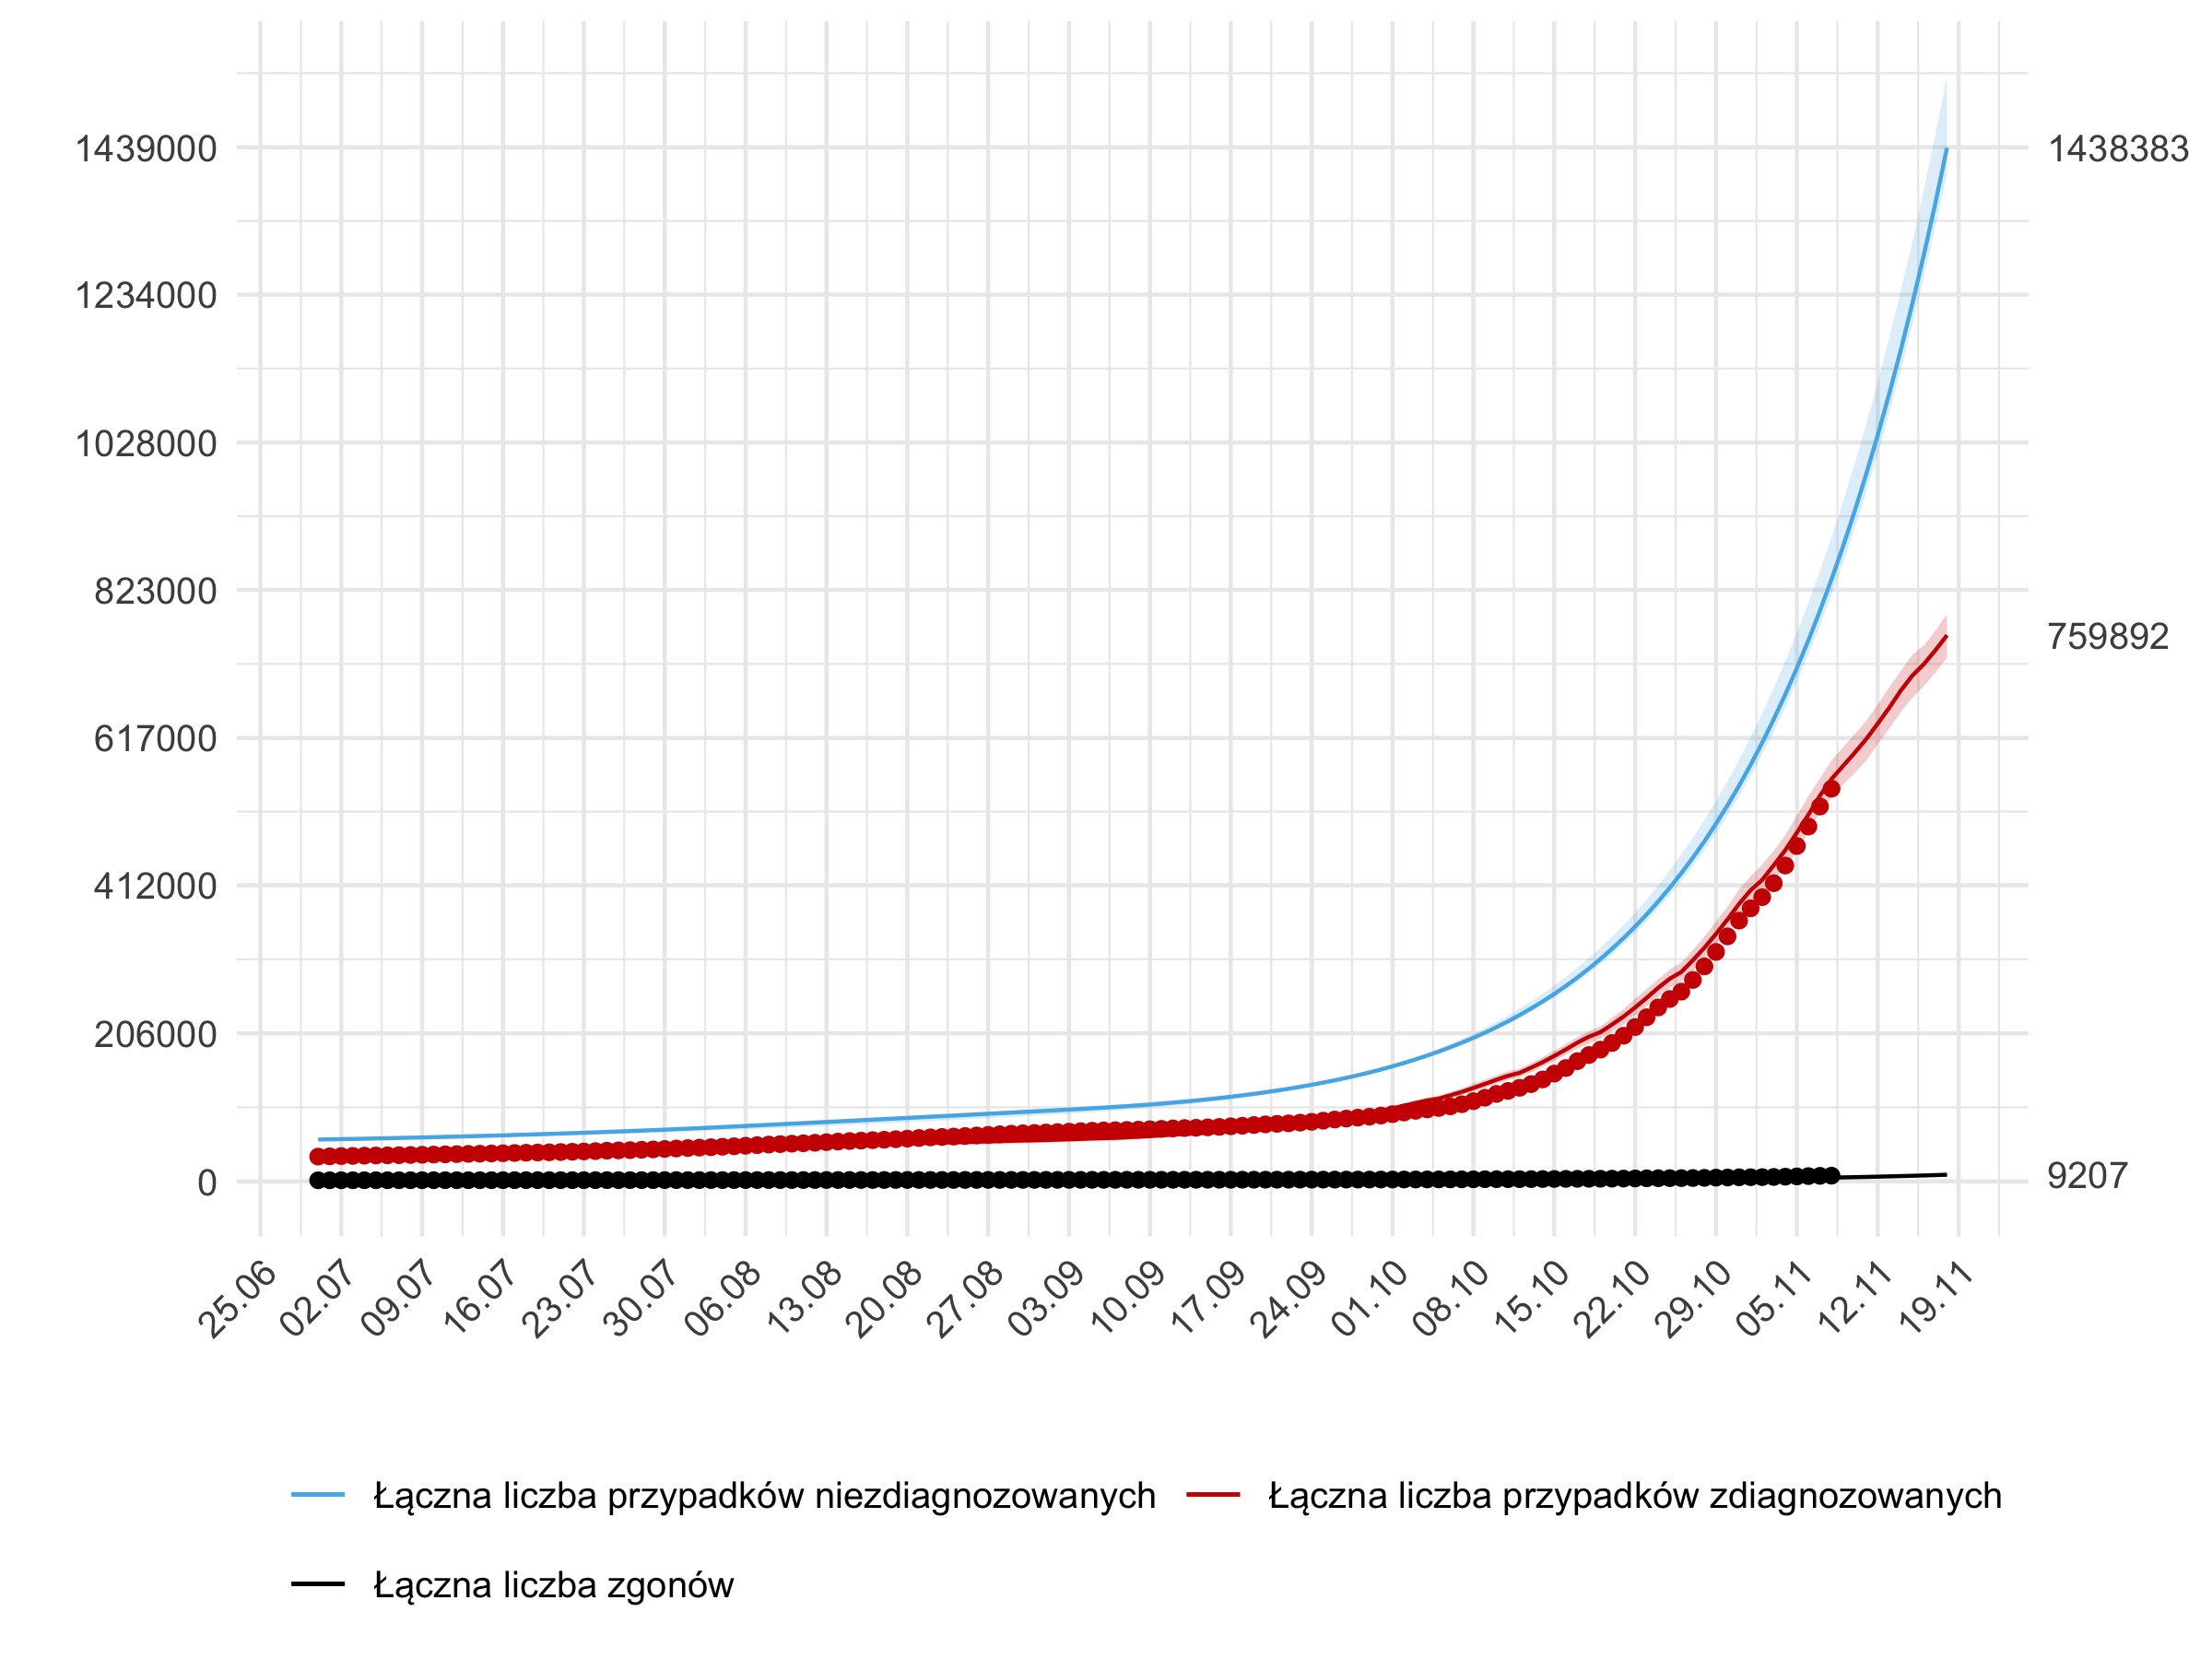 Krótkoterminowa prognoza łącznej liczby przypadków rozpoznanych (czerwona linia) i nierozpoznanych (niebieska) oraz zgonów w modelu stochastycznym. 